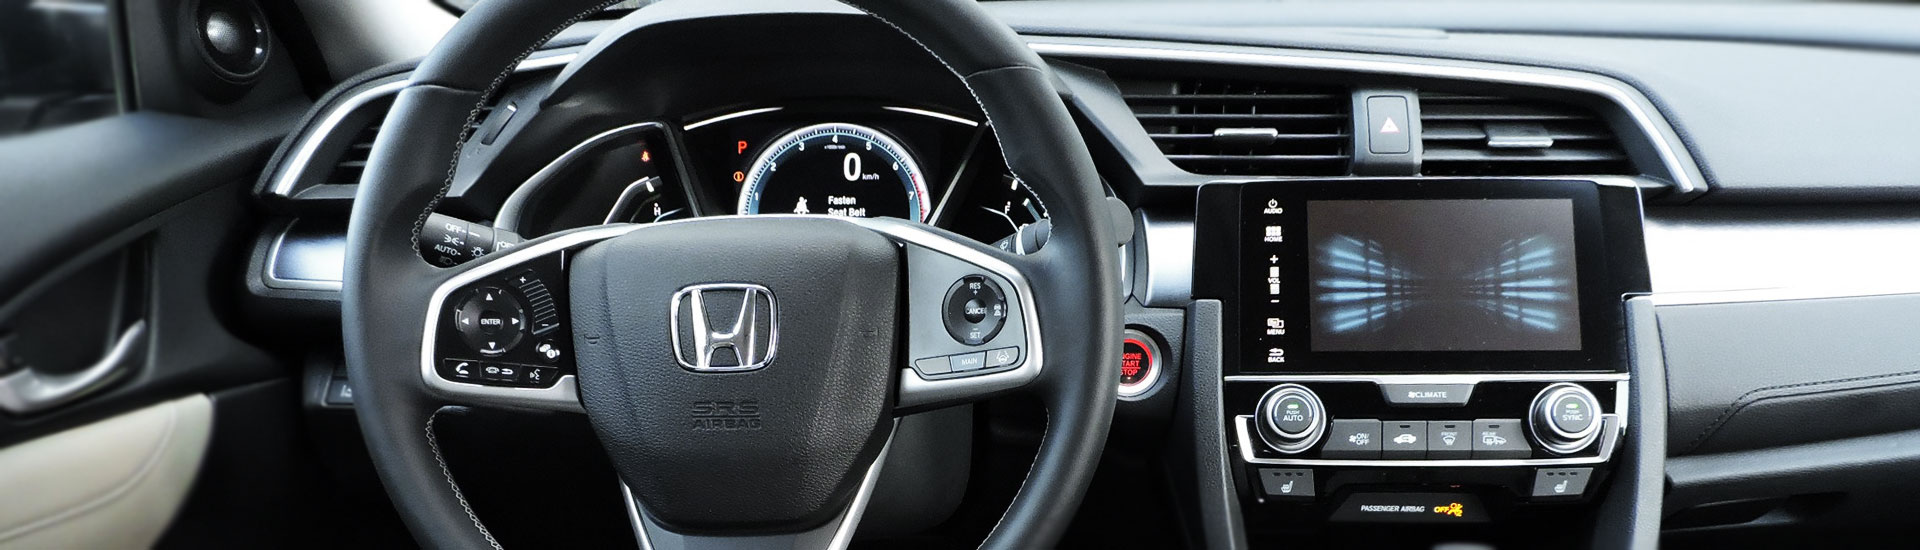 2015 Honda CR-V Custom Dash Kits